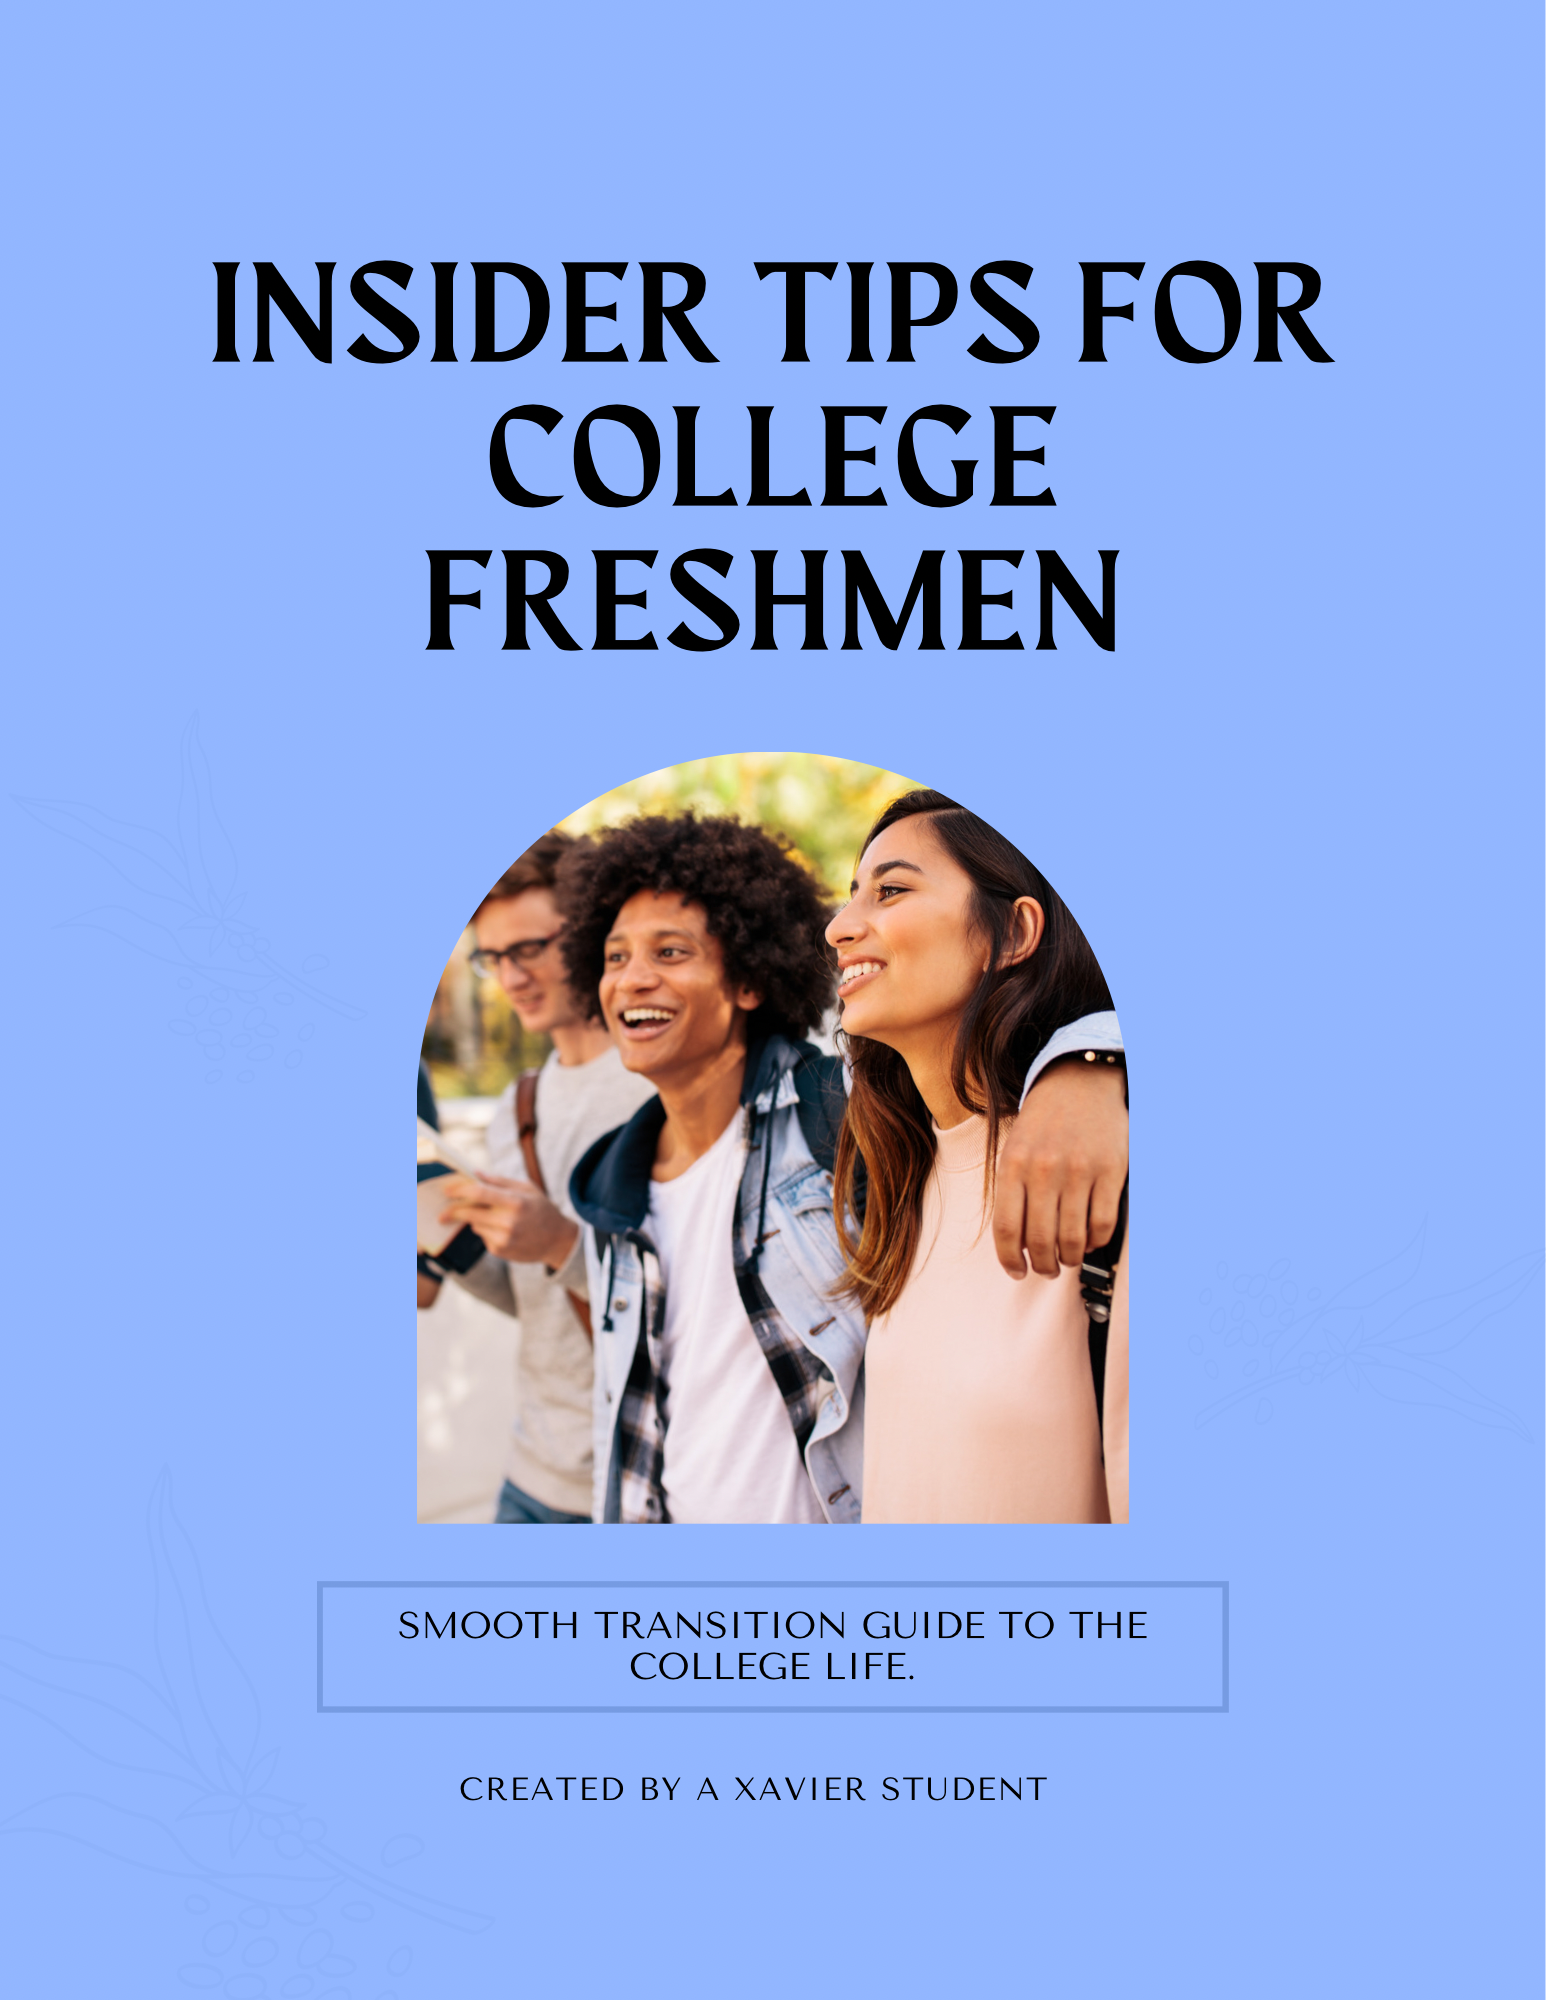 Insider Tips for College Freshmen